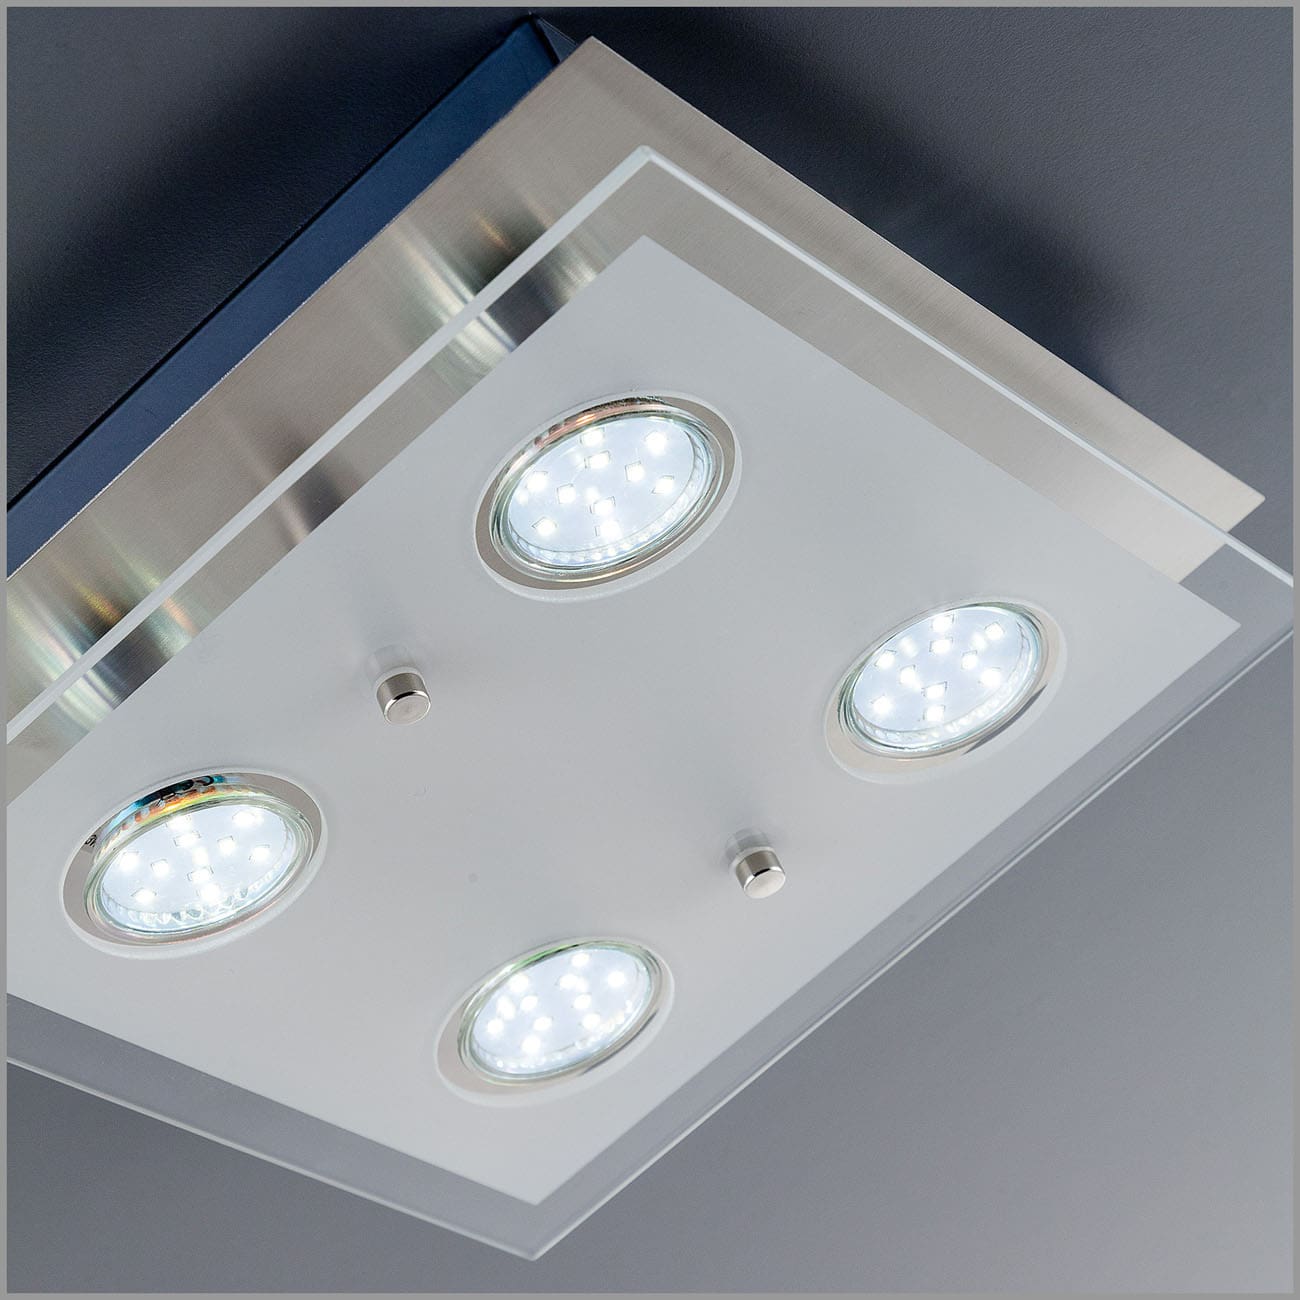 LED Deckenleuchte 25x25cm - 4-flammig - moderne Deckenlampe Glas Metall GU10 12W 1000lm warmweiß | Matt-Nickel - 5